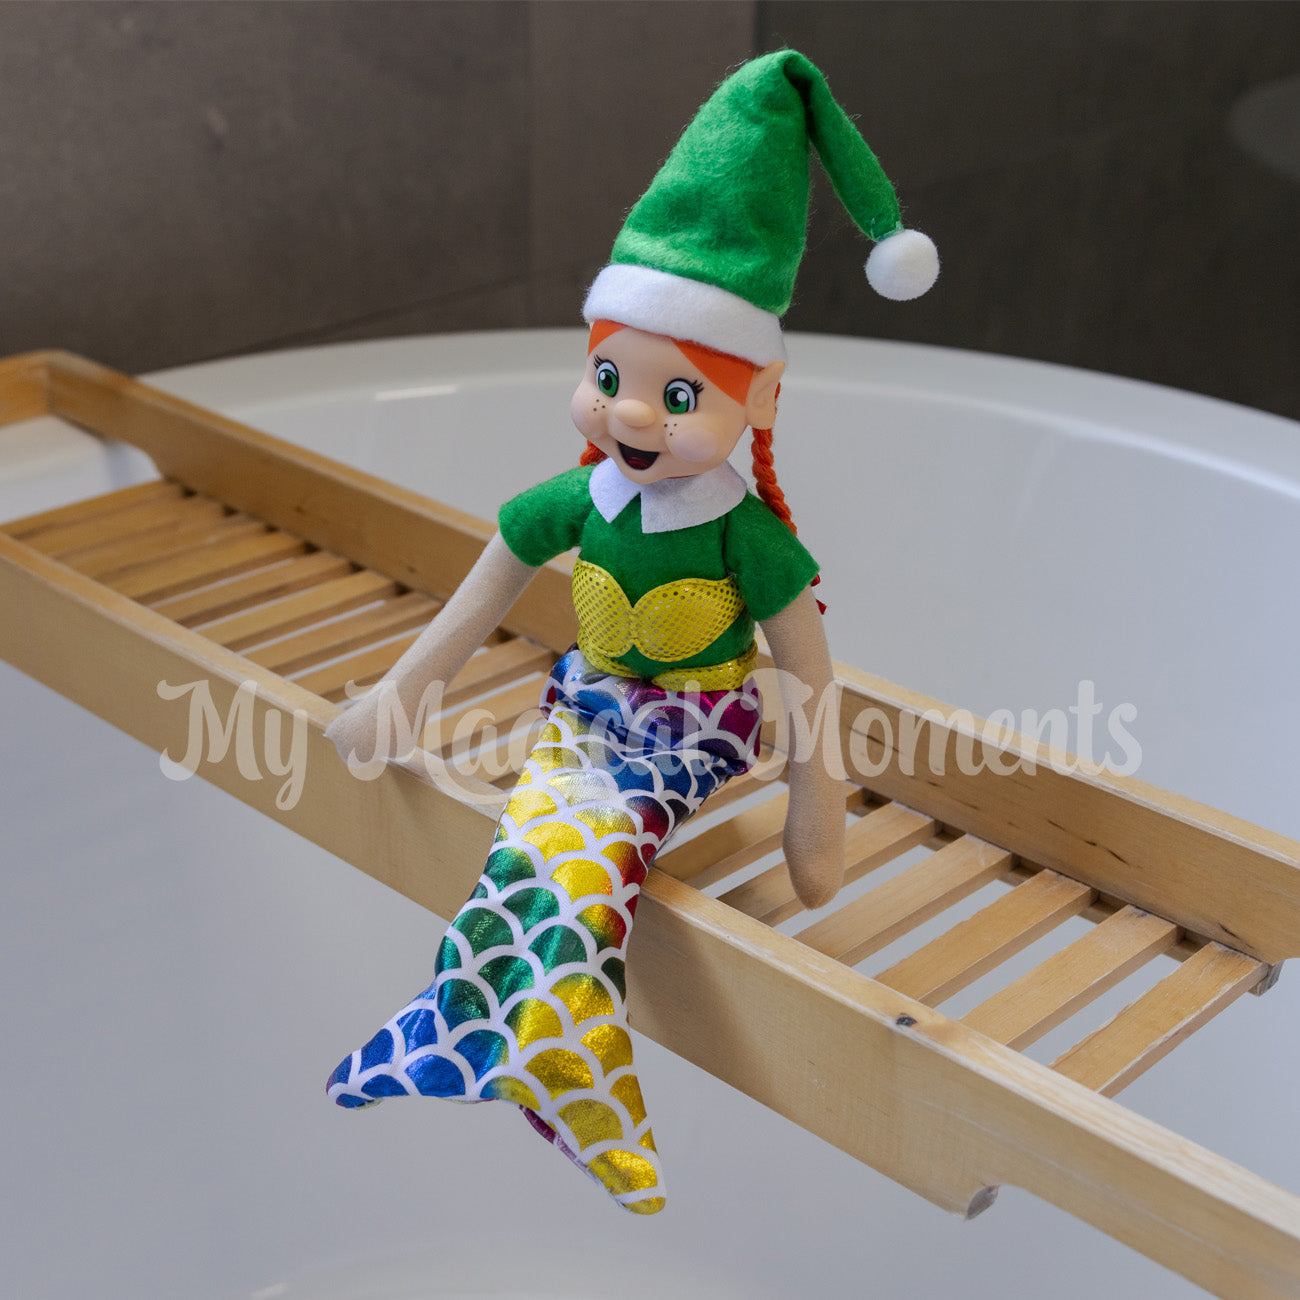 Red headed elf wearing a mermaid costume in bathtub